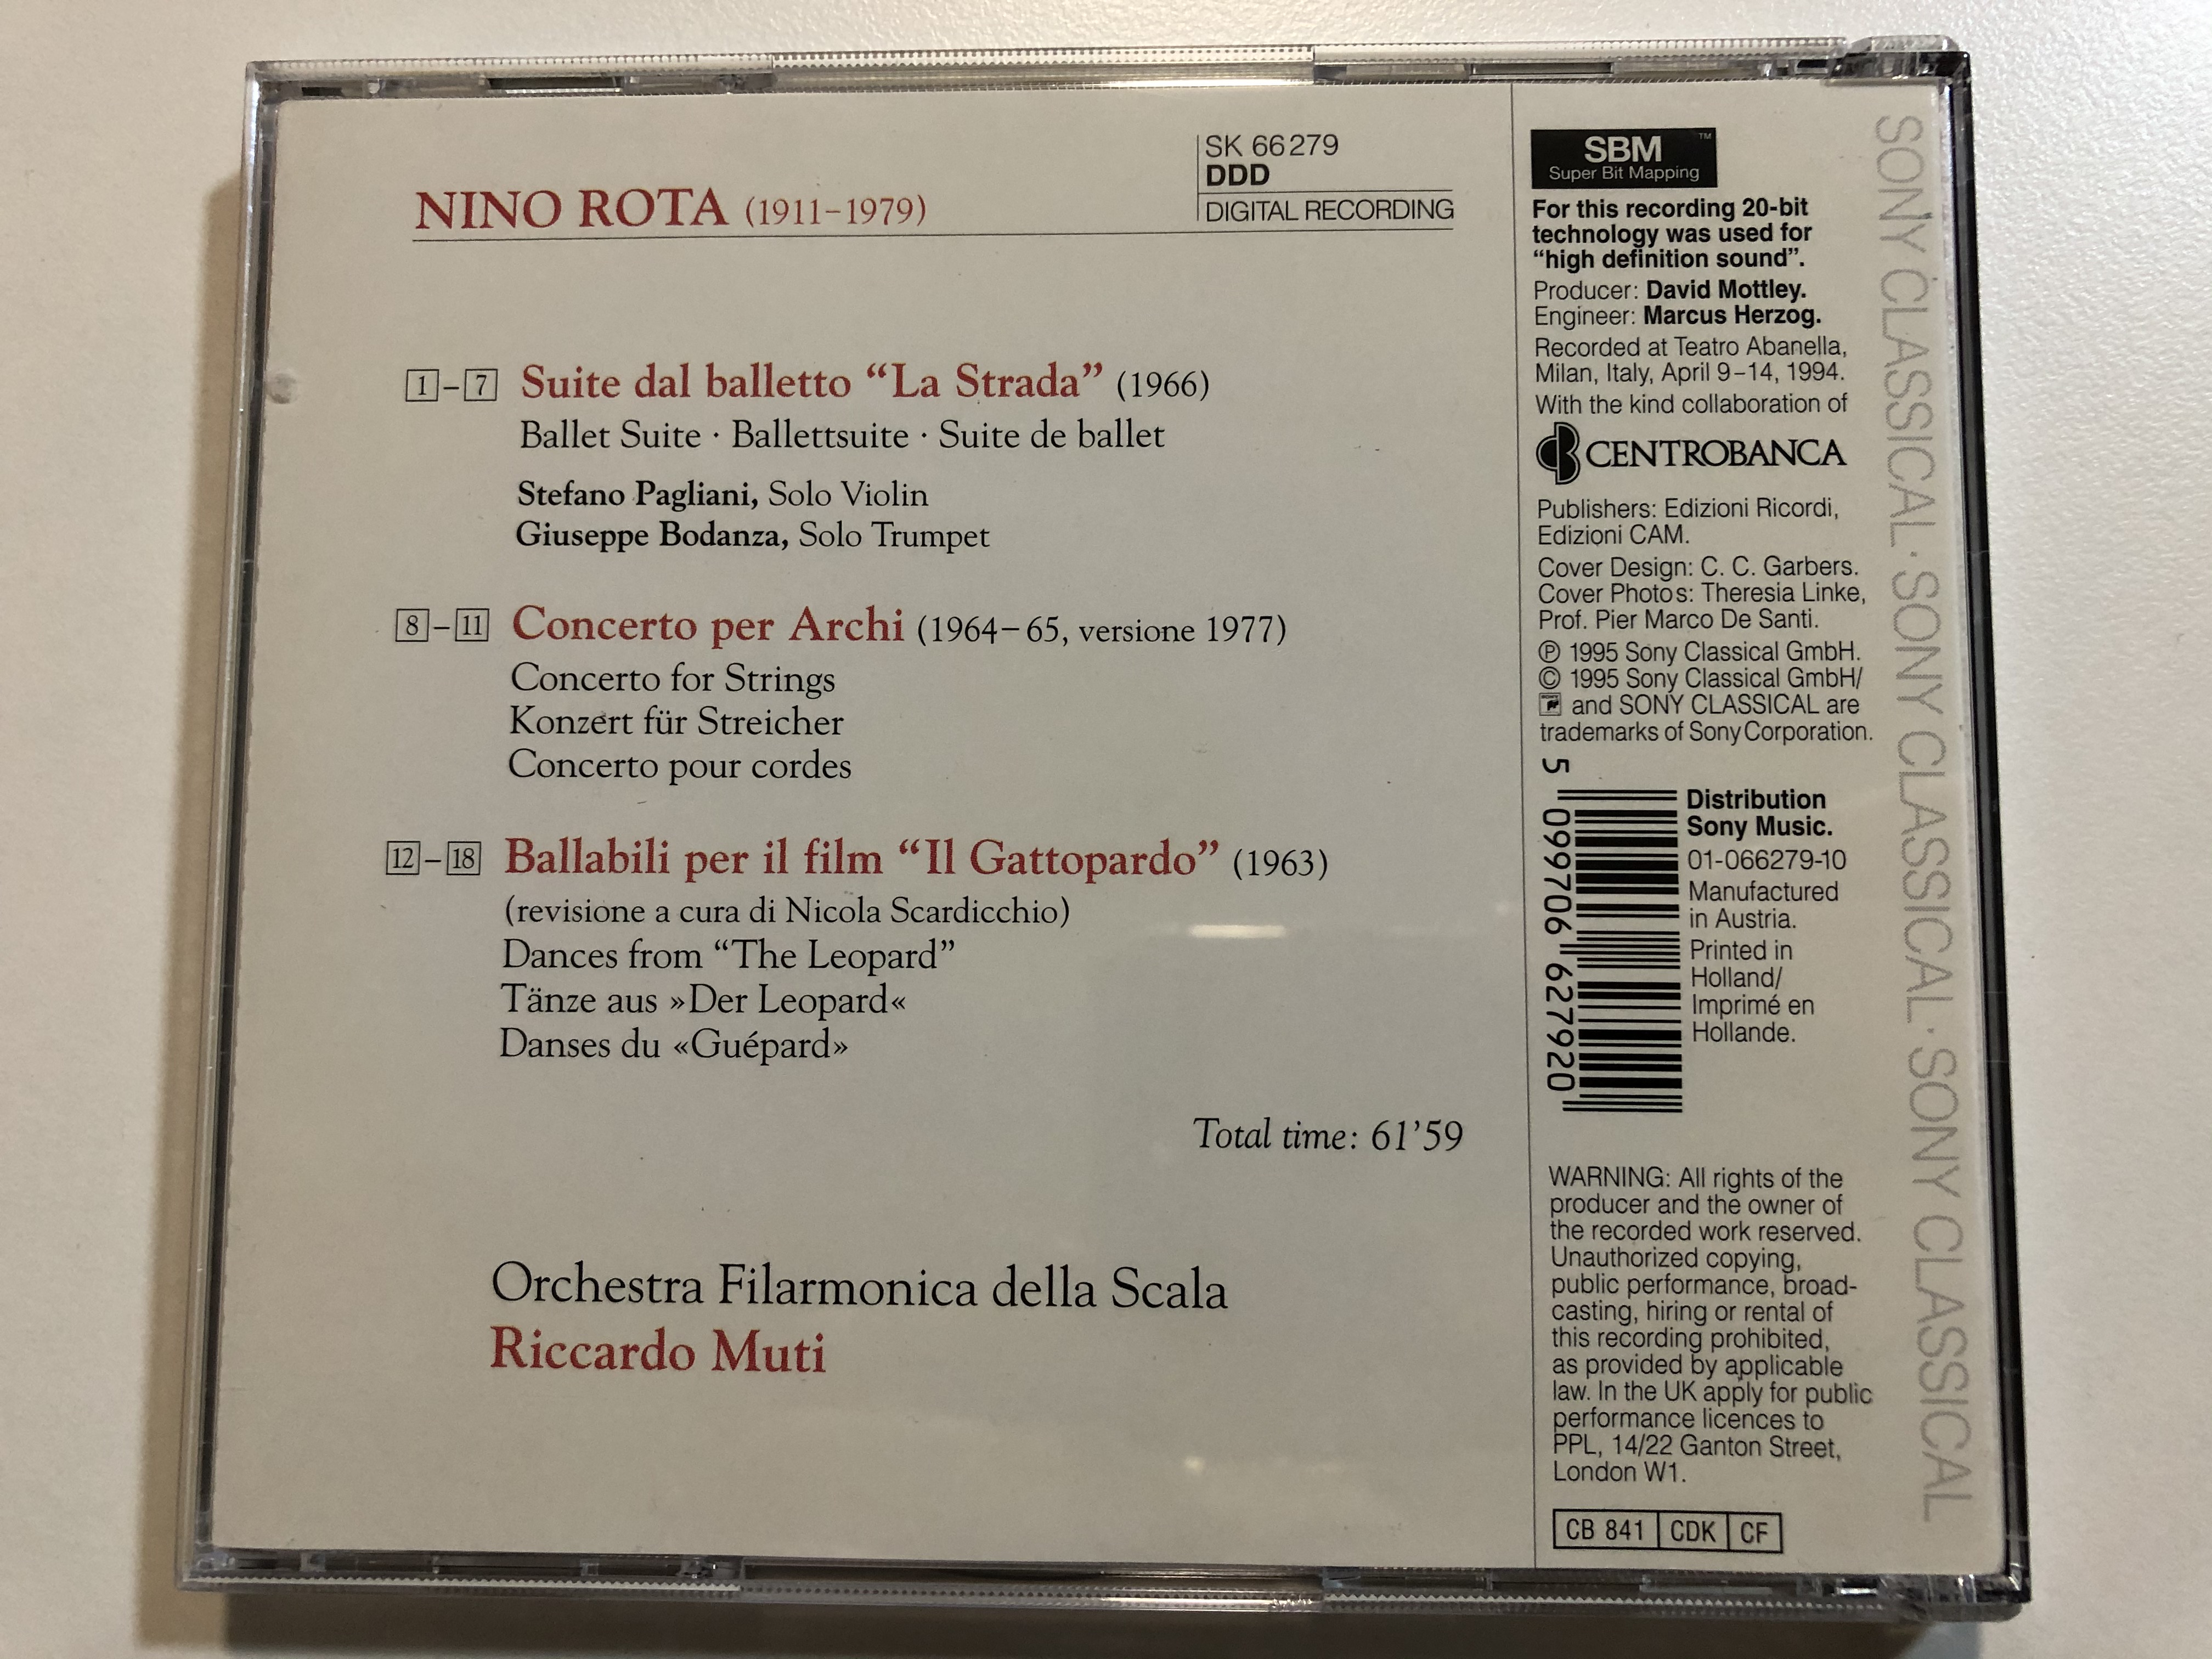 la-strada-ballet-suite-concerto-for-strings-dances-from-il-gattopardo-nino-rota-orchestra-filarmonica-della-scala-riccardo-muti-sony-classical-audio-cd-1995-sk-66-279-2-.jpg